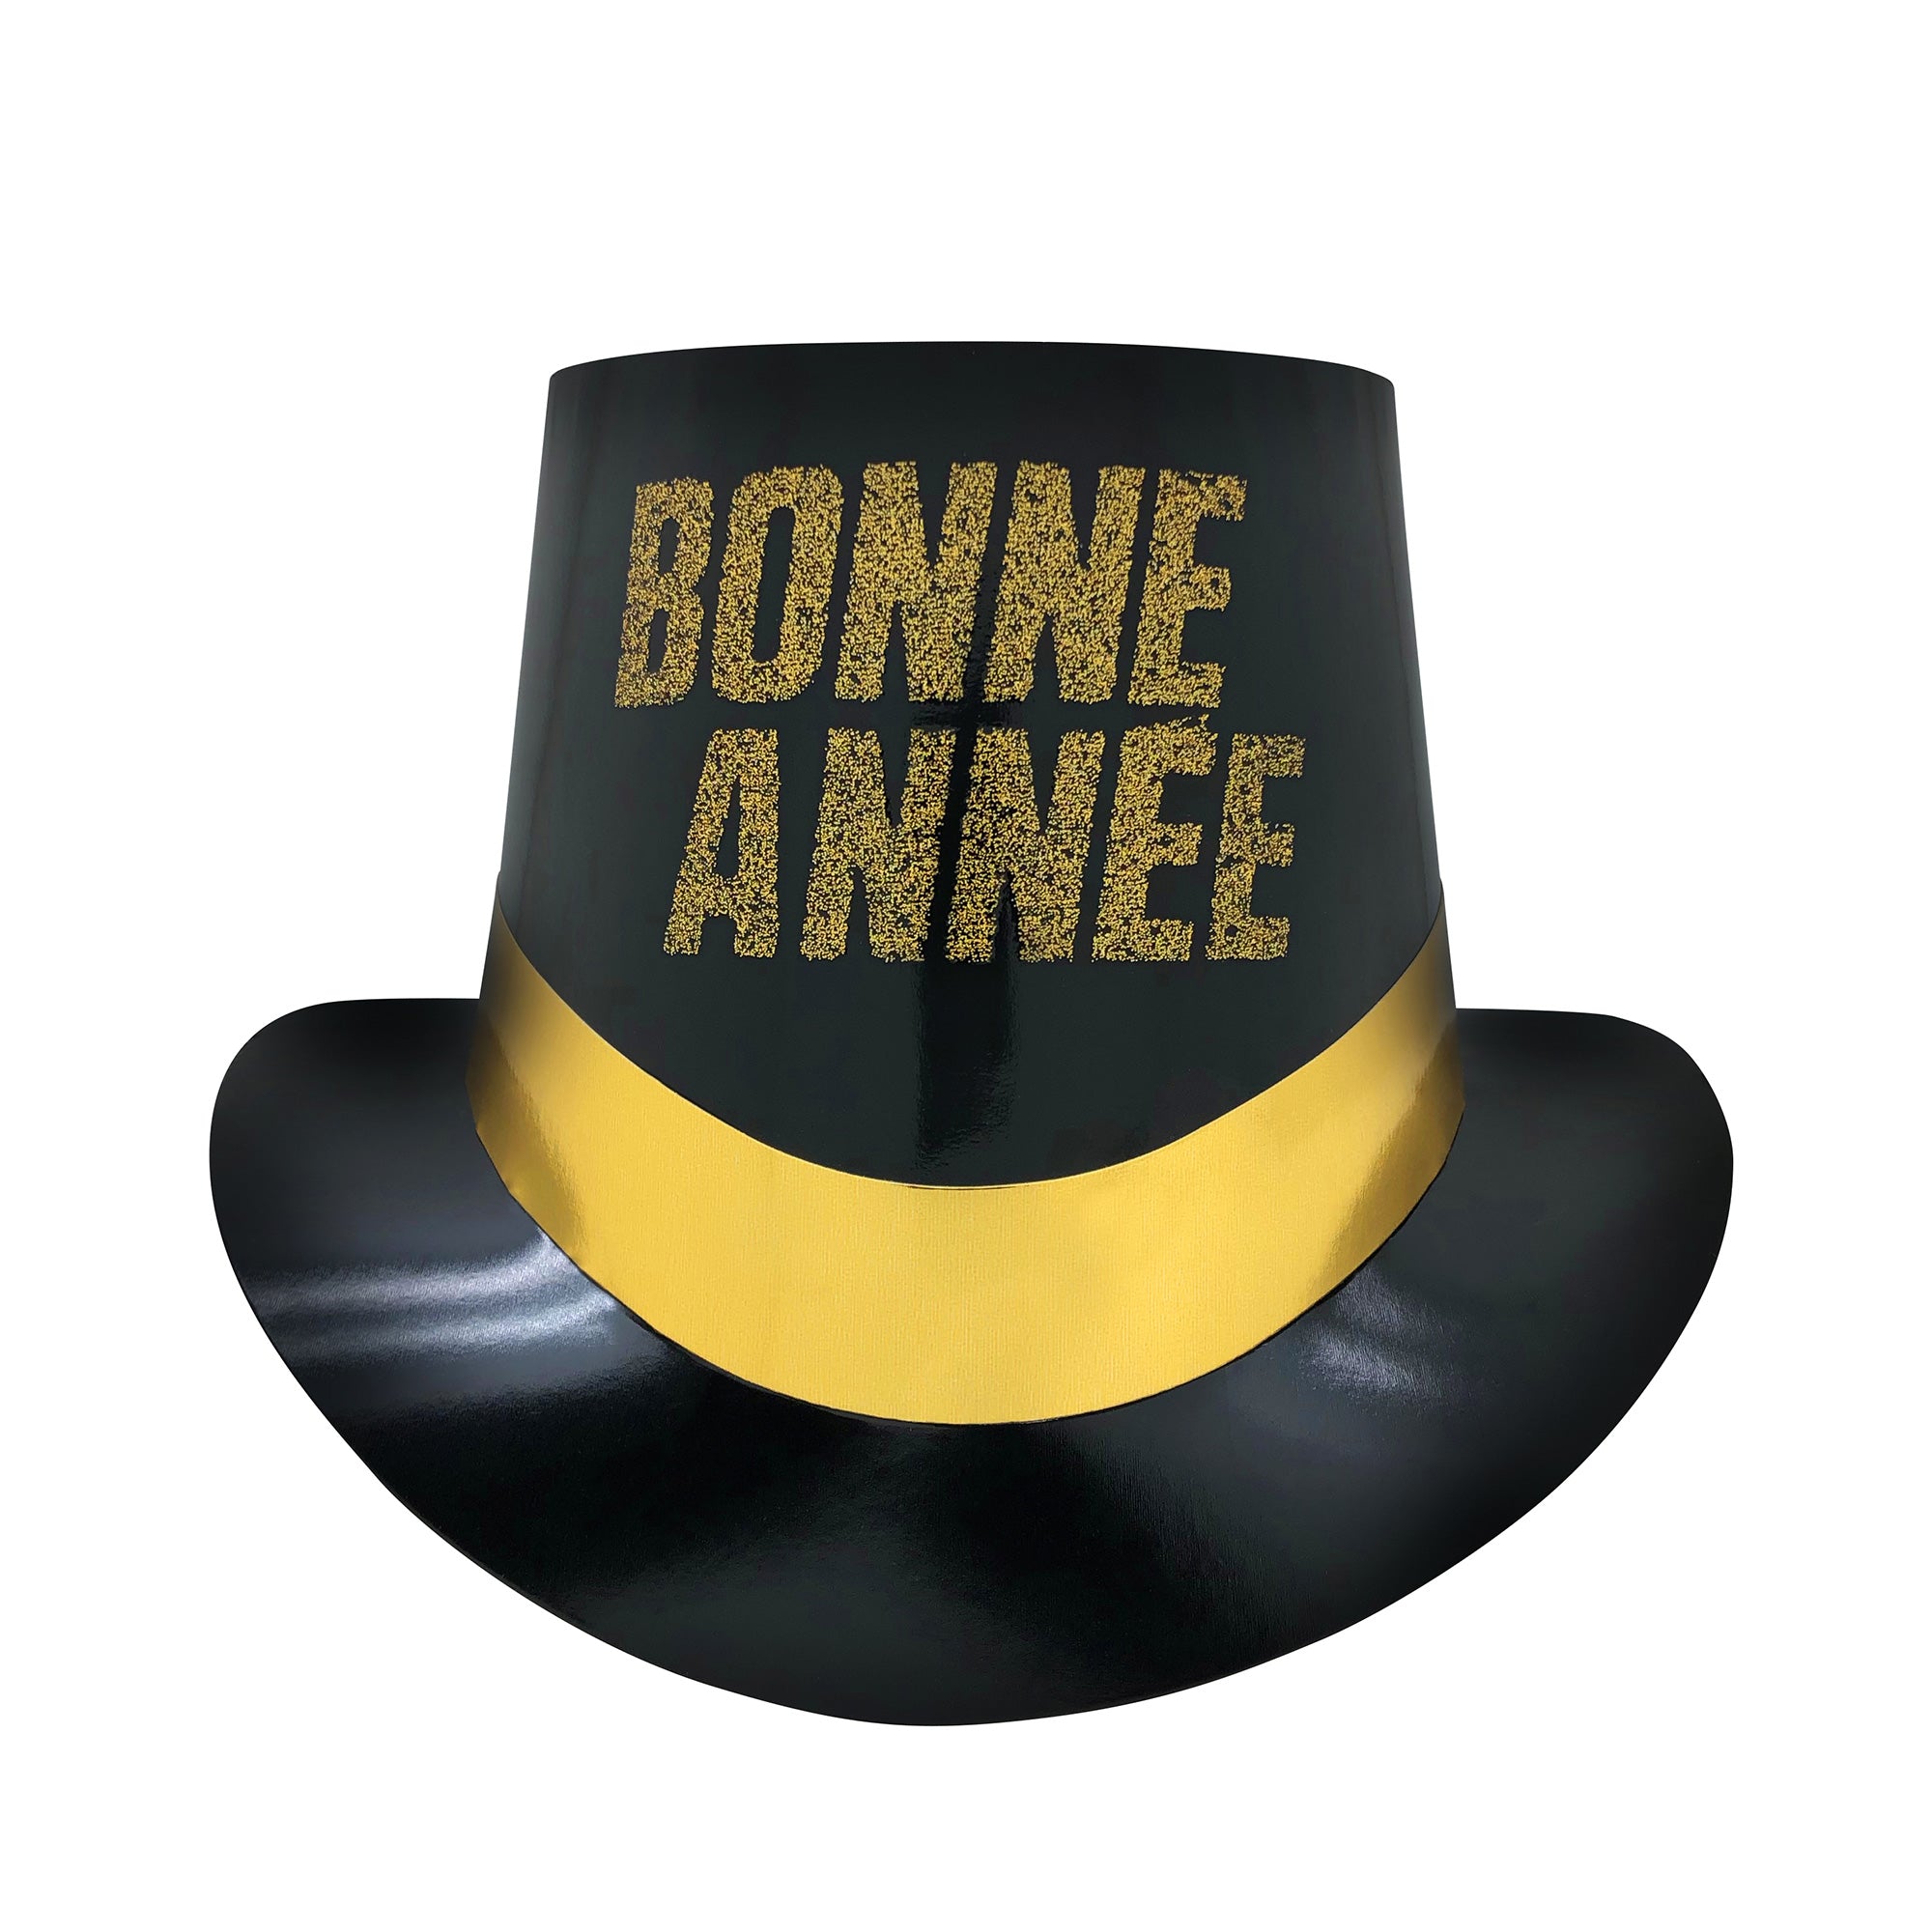 4 pièces chapeau cône nouvelle année décoration 2024 chapeau